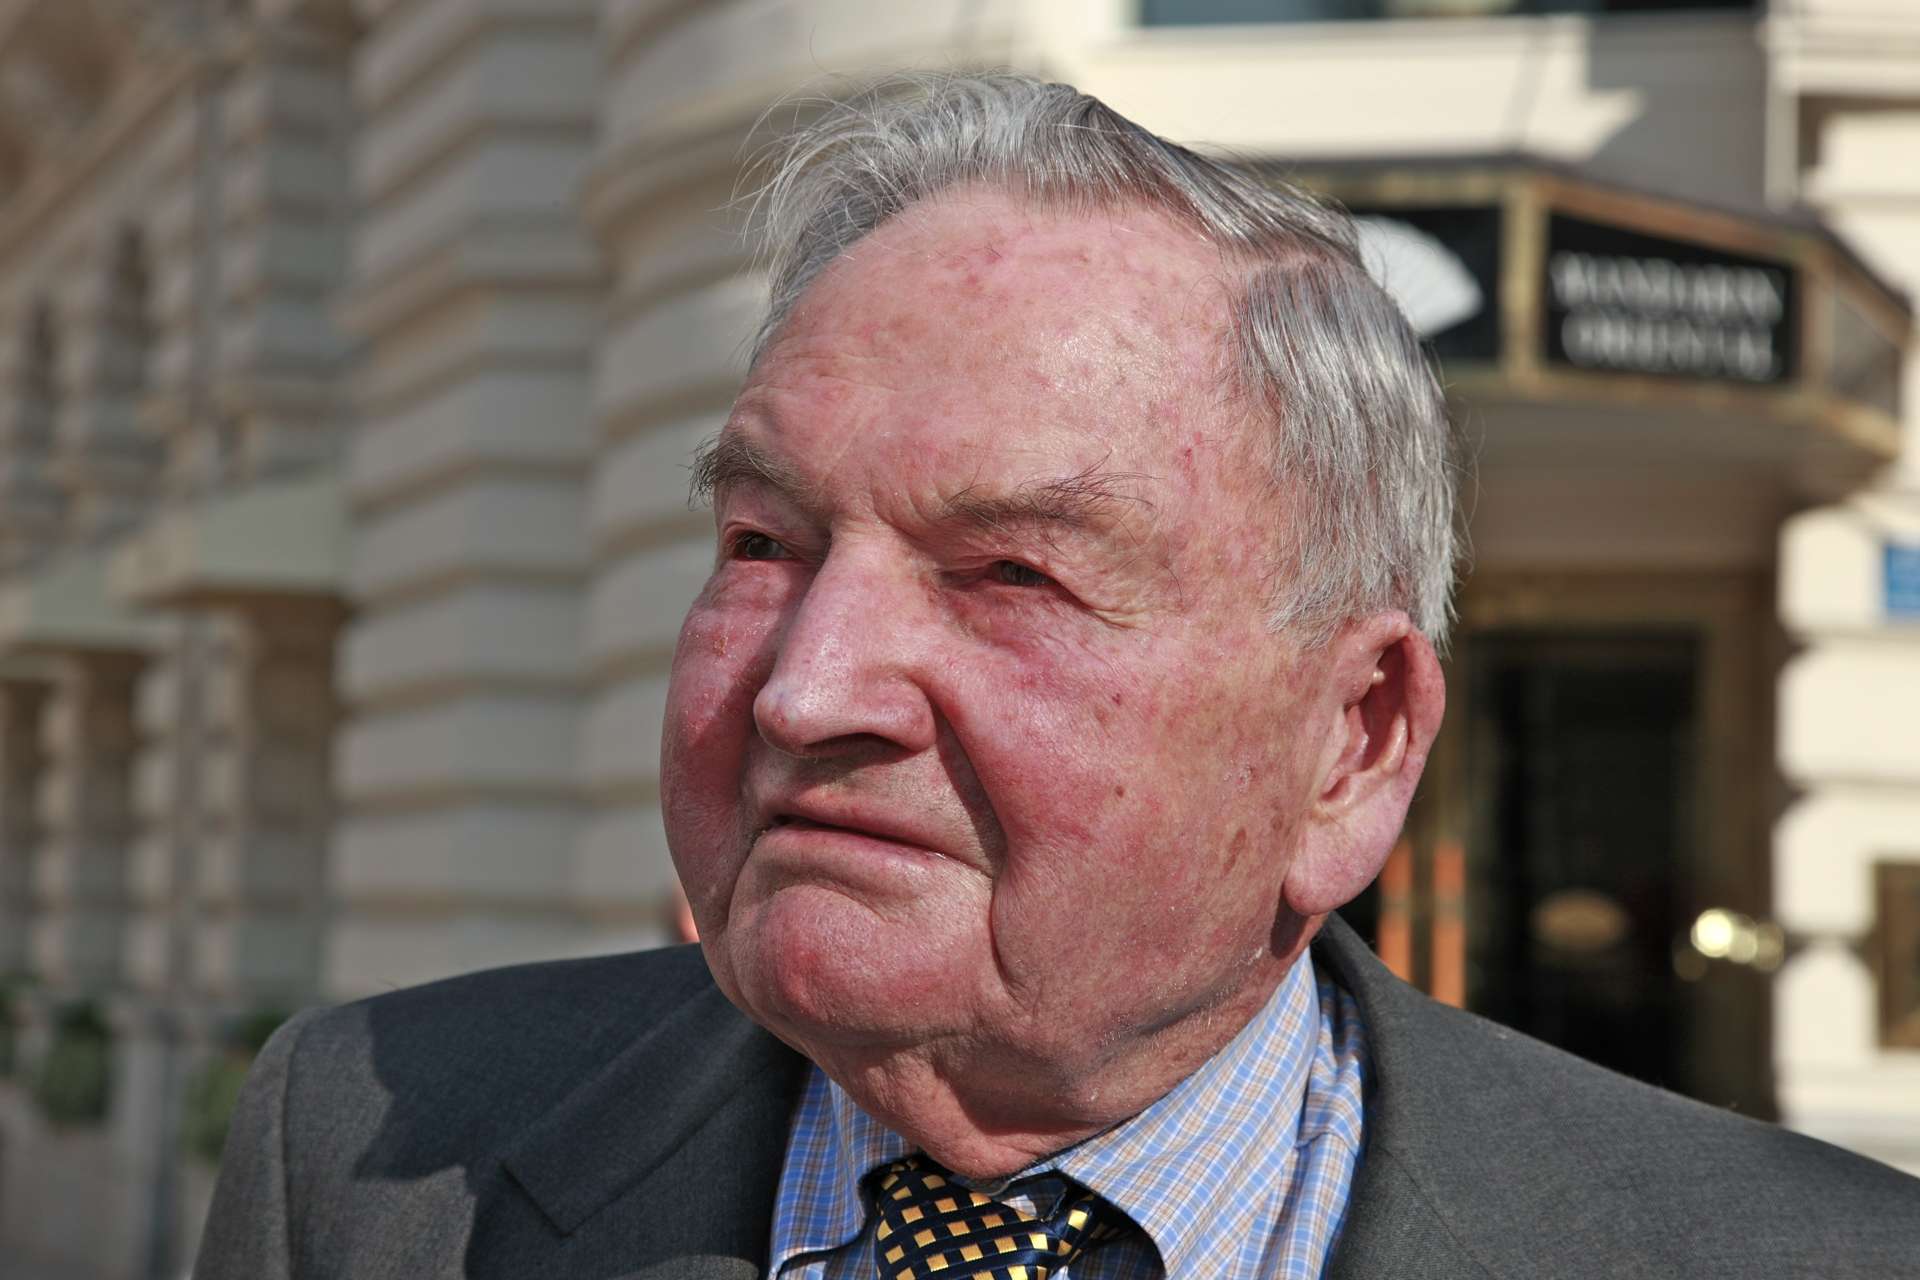 Banqueiro e filantropo David Rockefeller morre aos 101 anos